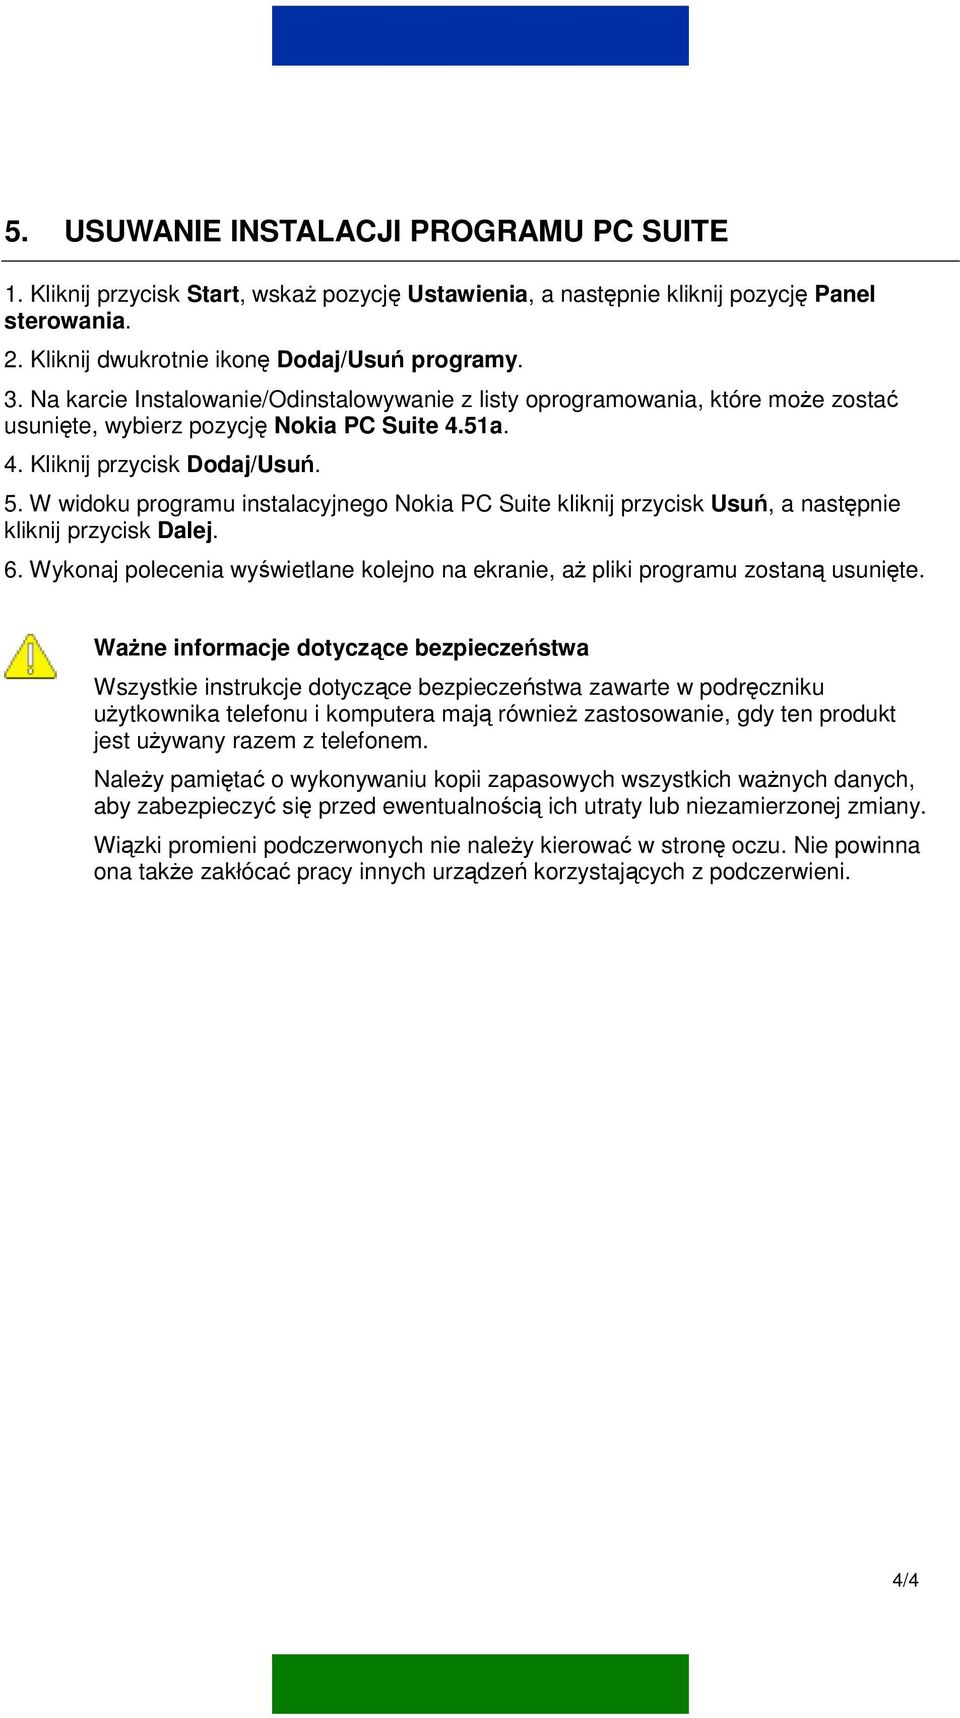 W widoku programu instalacyjnego Nokia PC Suite kliknij przycisk Usuń, a następnie kliknij przycisk Dalej. 6. Wykonaj polecenia wyświetlane kolejno na ekranie, aż pliki programu zostaną usunięte.